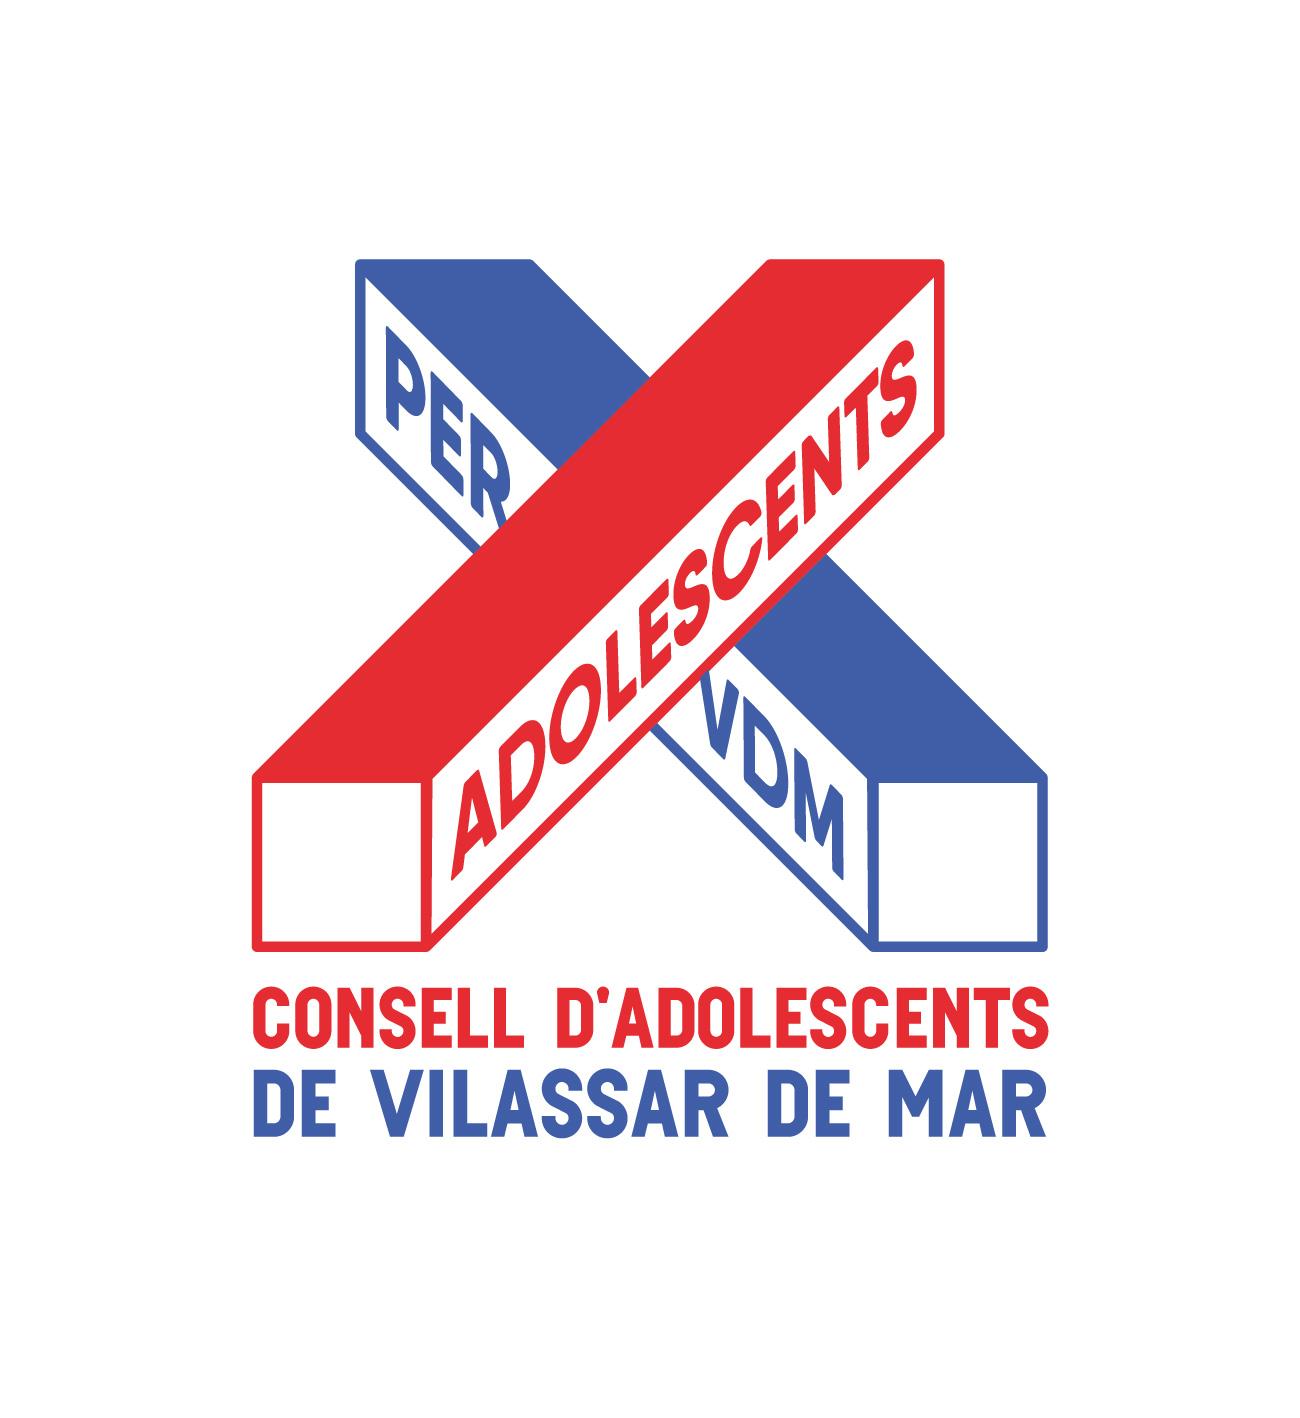 Logotip Consell d'Adolescents de Vilassar de Mar